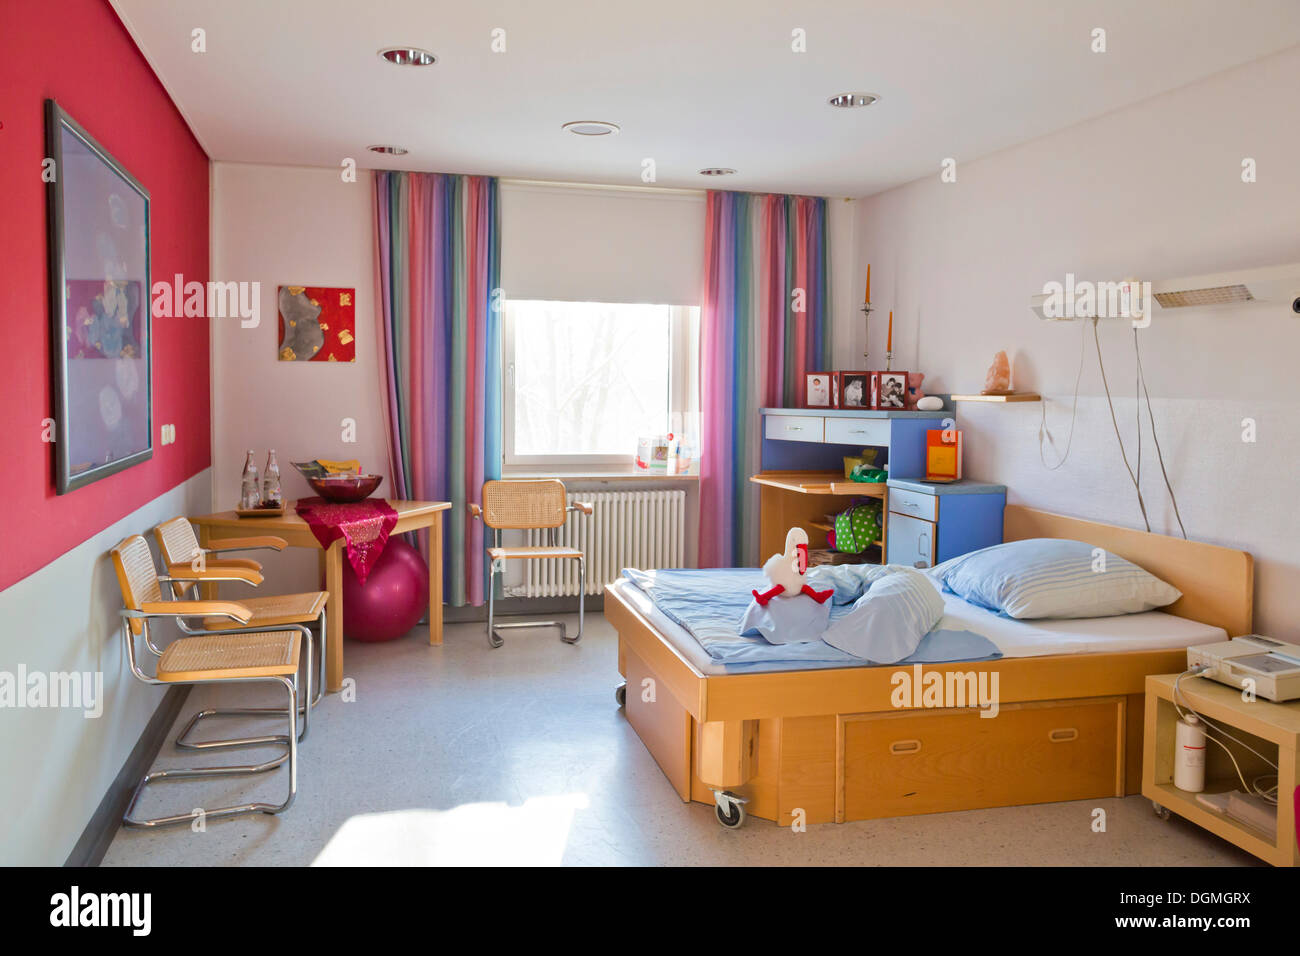 Chambre familiale, la pièce de repos dans une maternité, Allemagne Banque D'Images